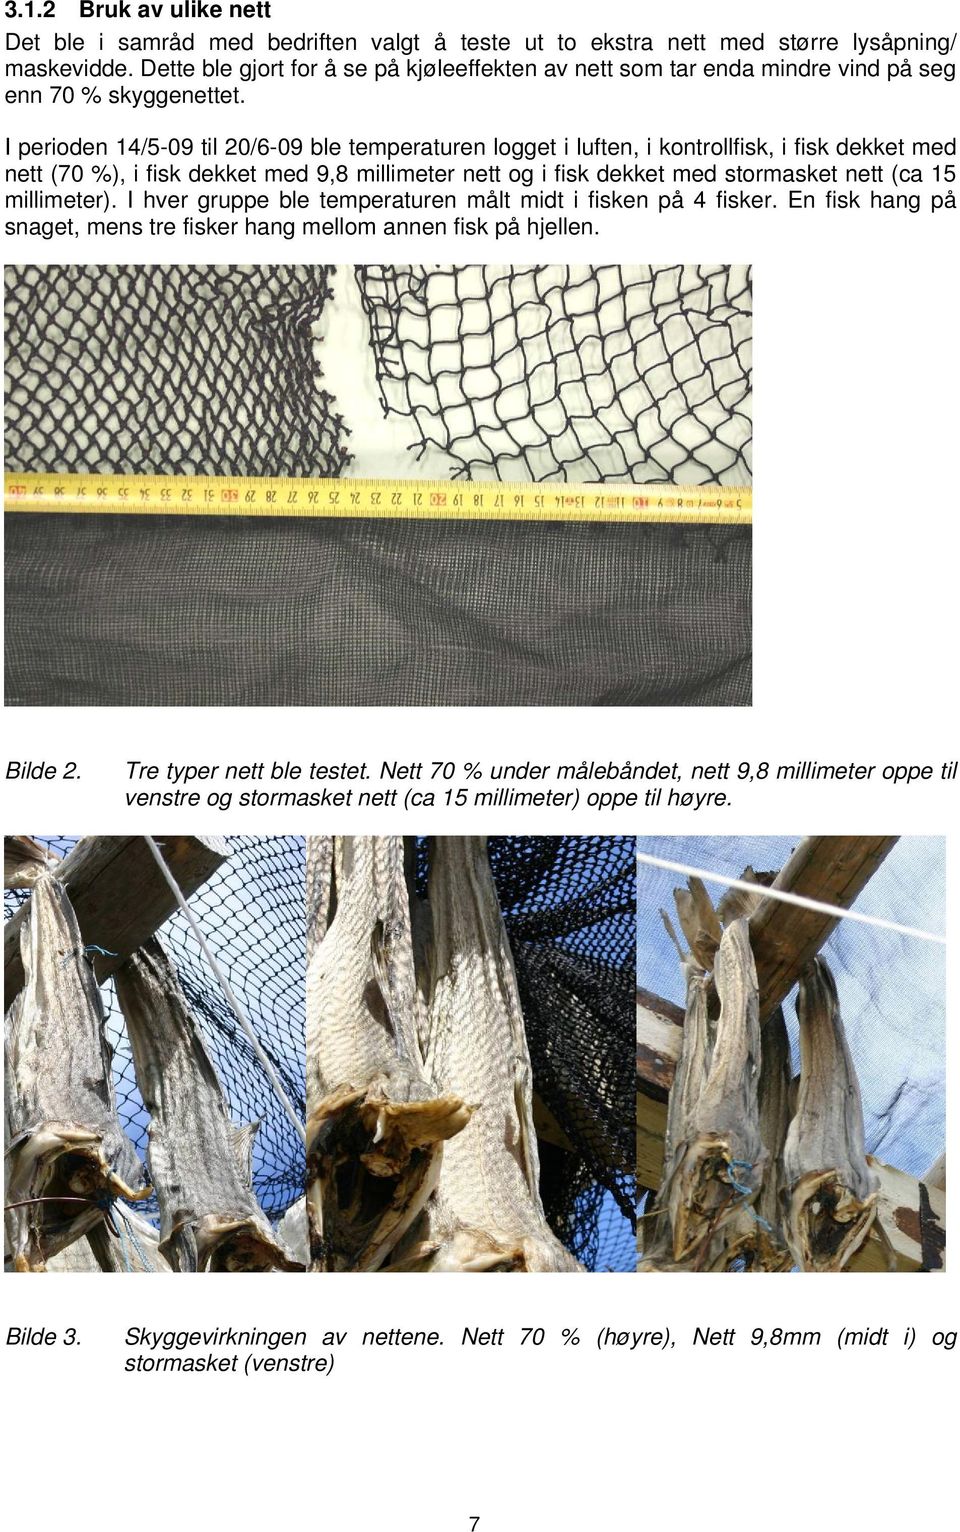 I perioden 14/5-09 til 20/6-09 ble temperaturen logget i luften, i kontrollfisk, i fisk dekket med nett (70 %), i fisk dekket med 9,8 millimeter nett og i fisk dekket med stormasket nett (ca 15